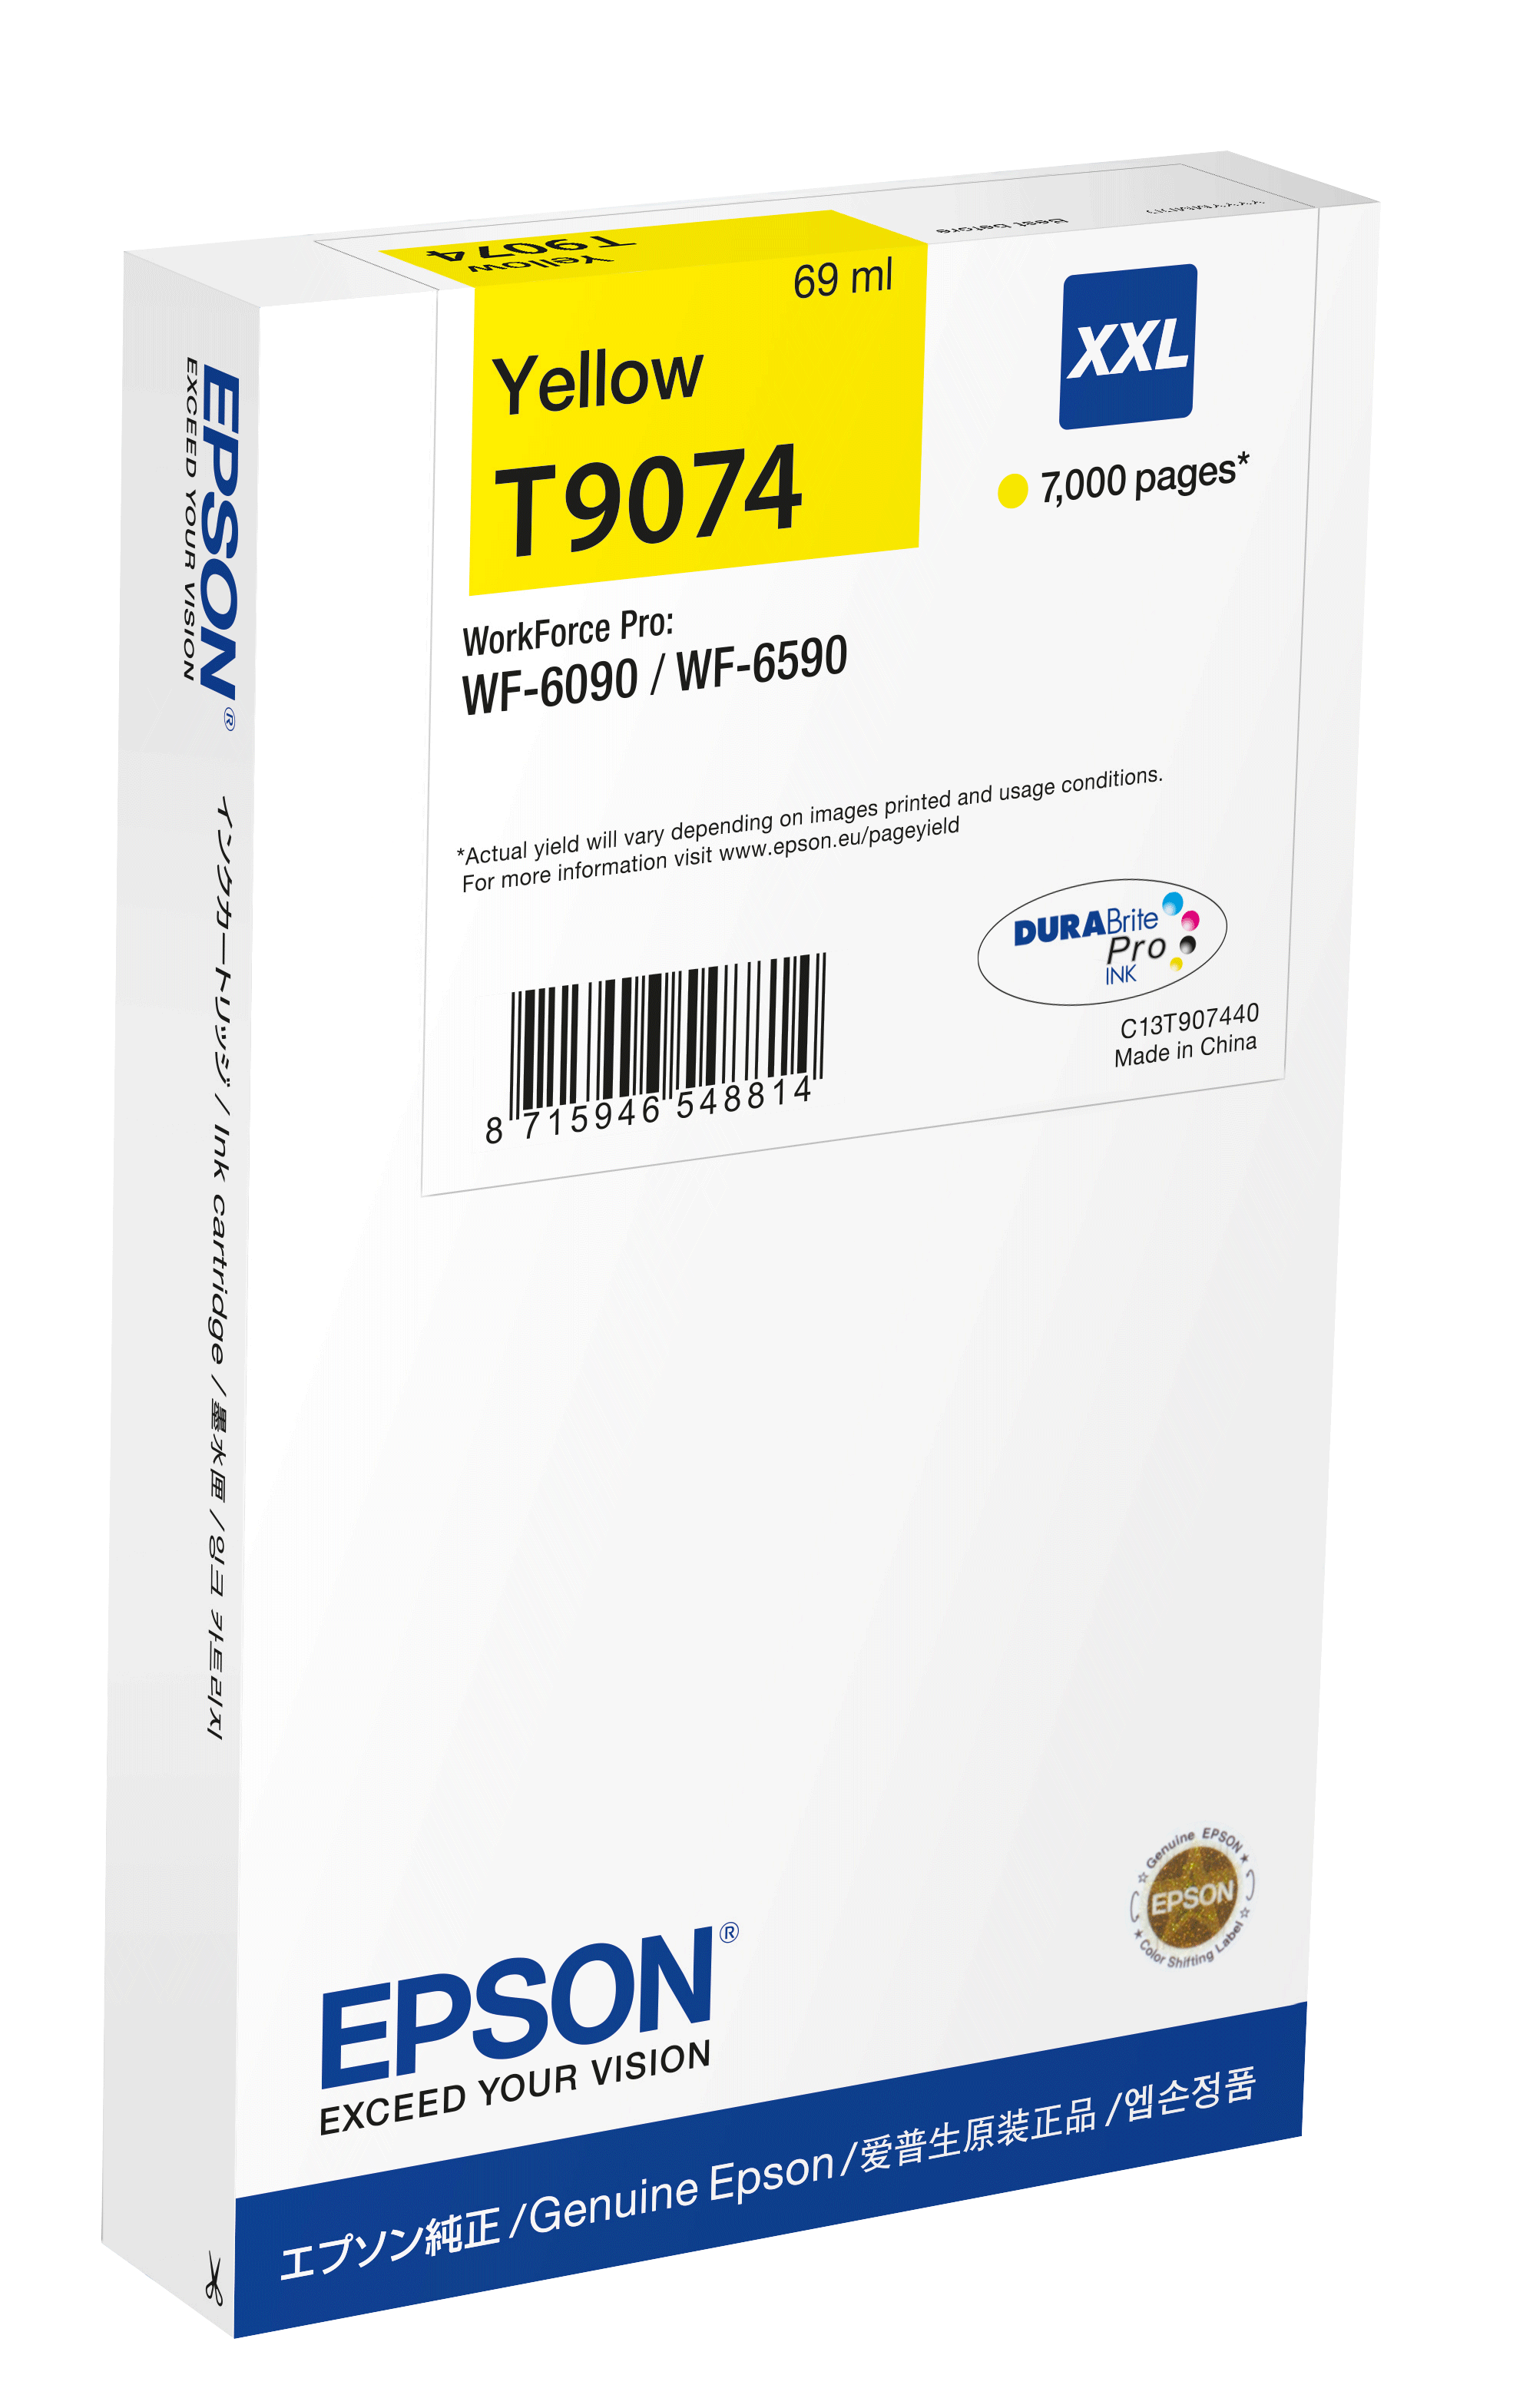 Epson WF-6xxx Ink Cartridge Yellow XXL single pack / geel